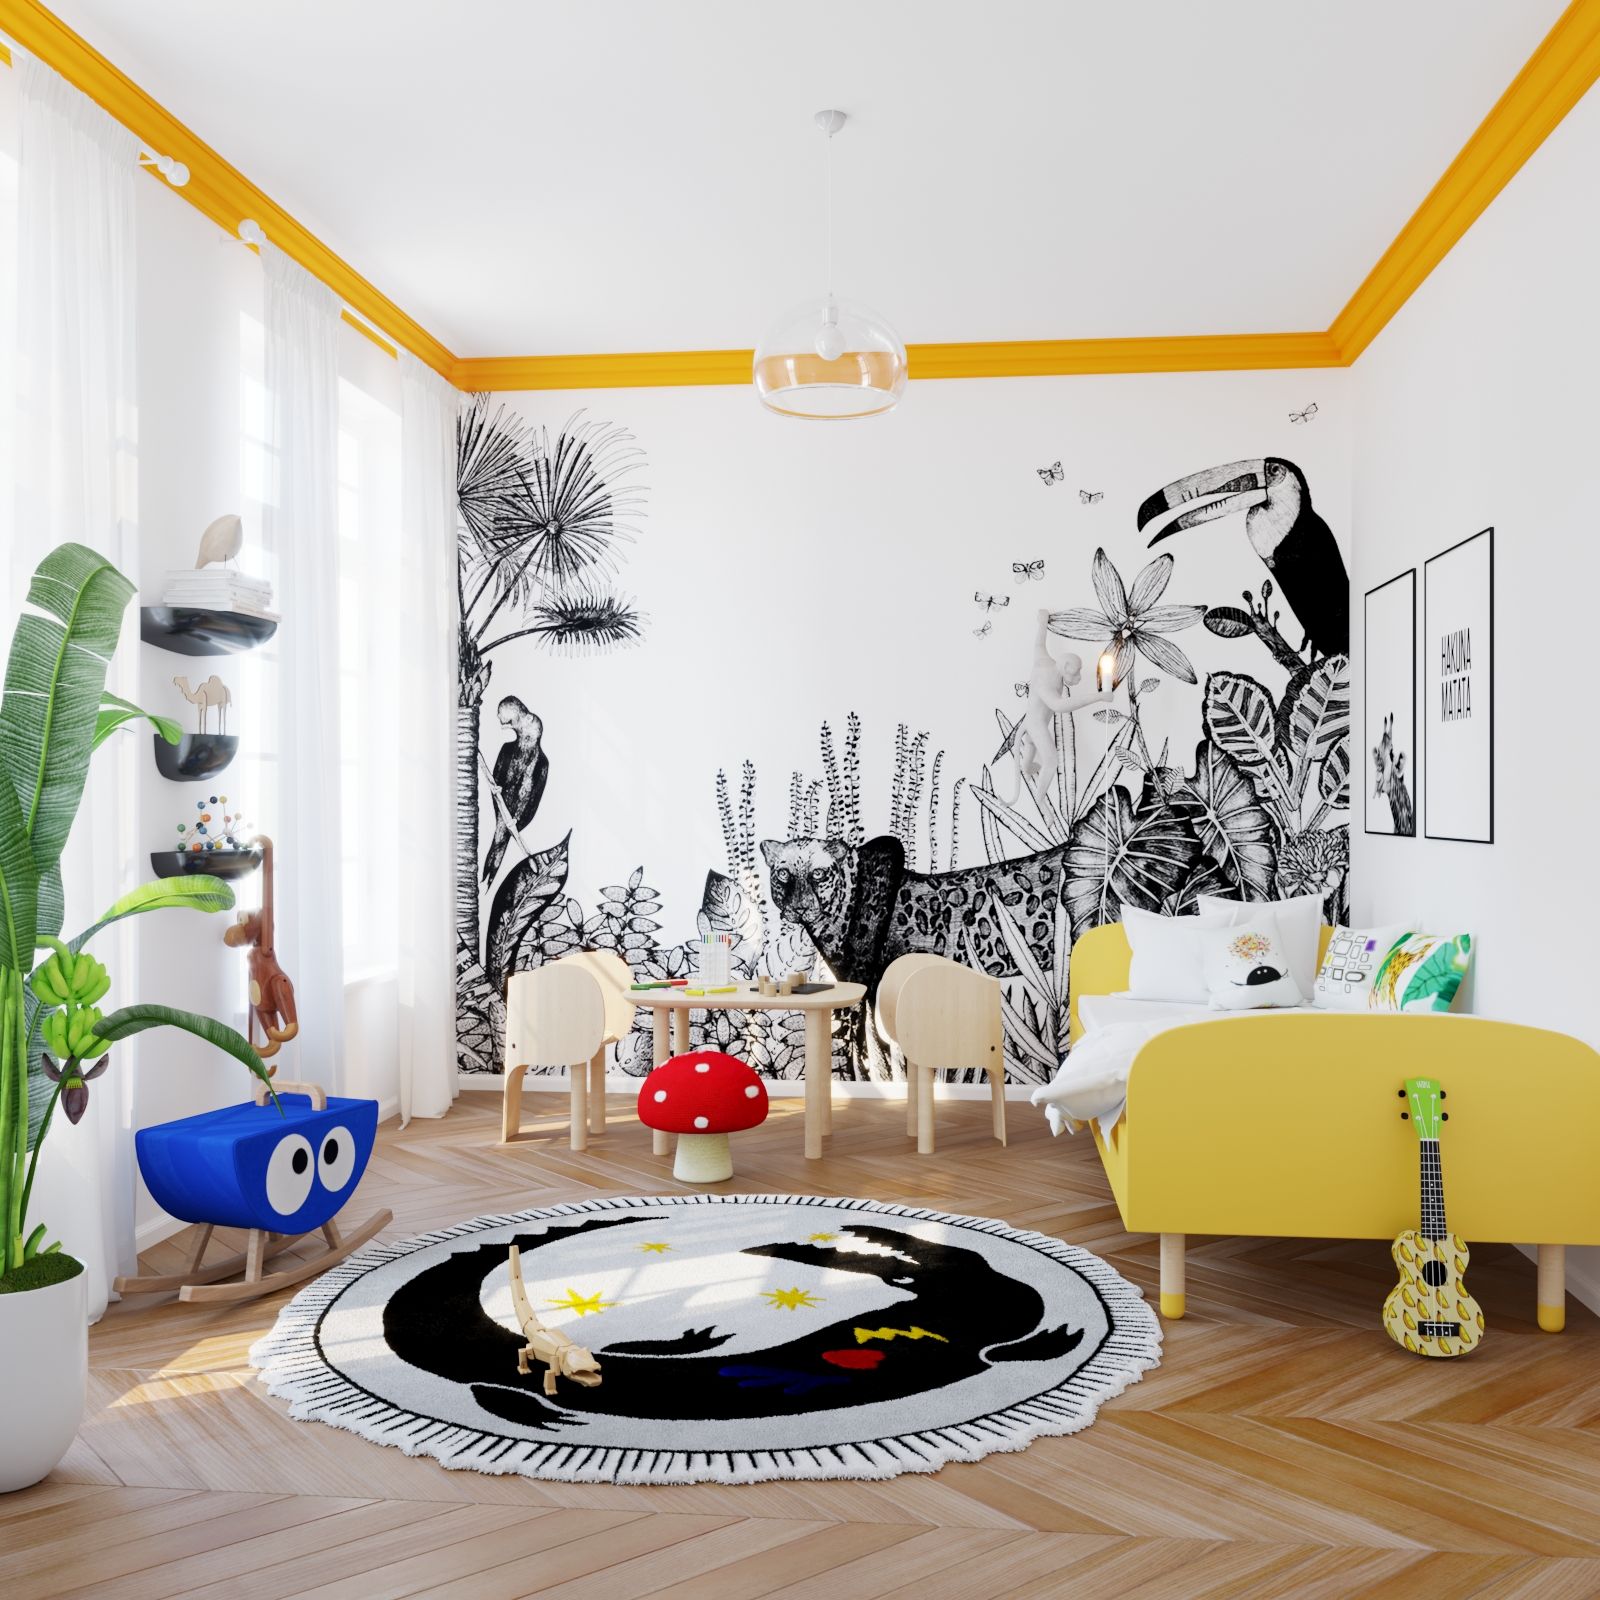 Dormitório da criança pelo Estúdio Sirio's bedroom by Studio Sirio